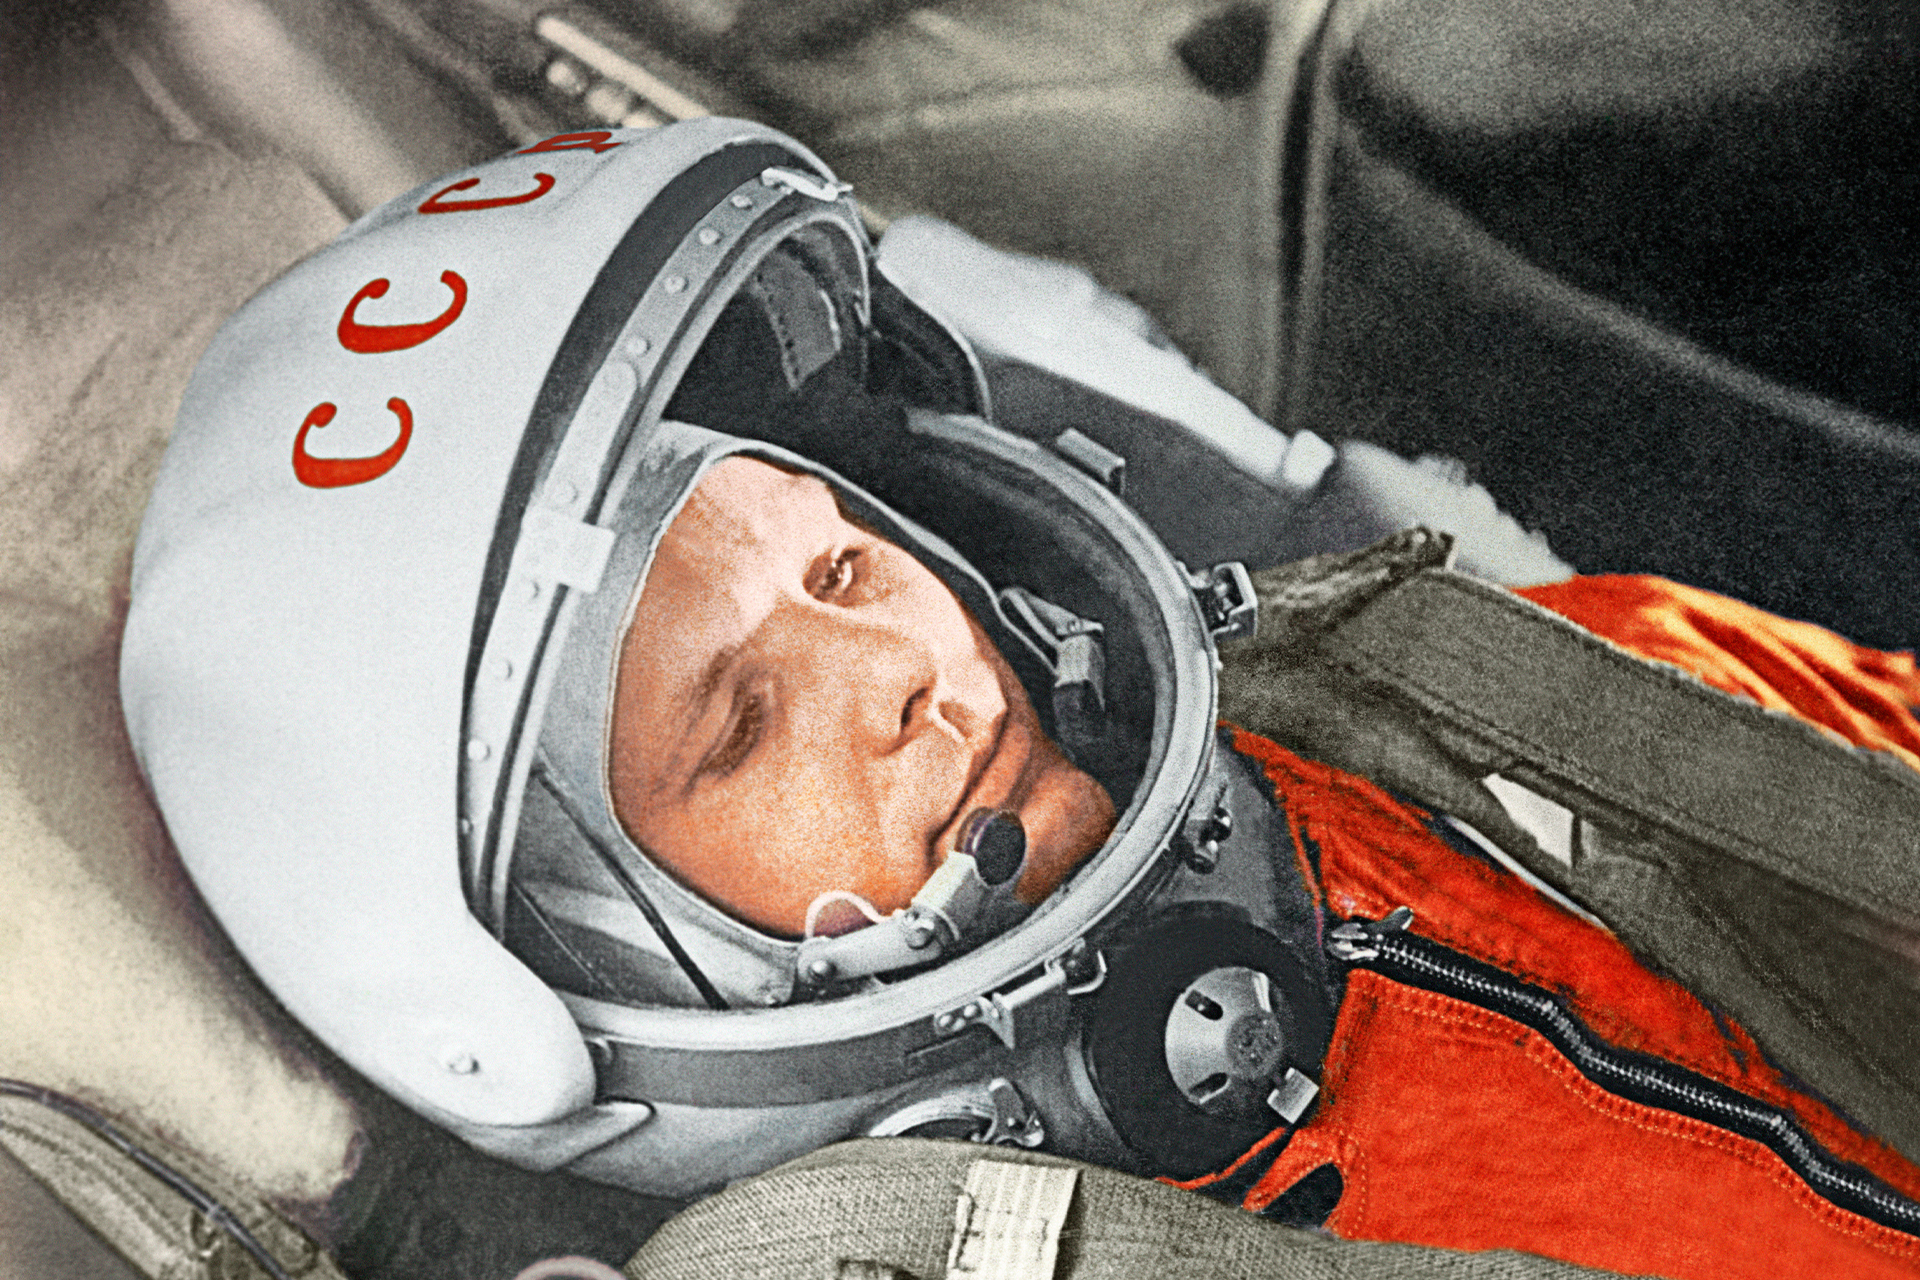 Космонавт Юрий Гагарин в кабине космического корабля «Восток-1» перед стартом. Космодром Байконур, 12 апреля 1961 год